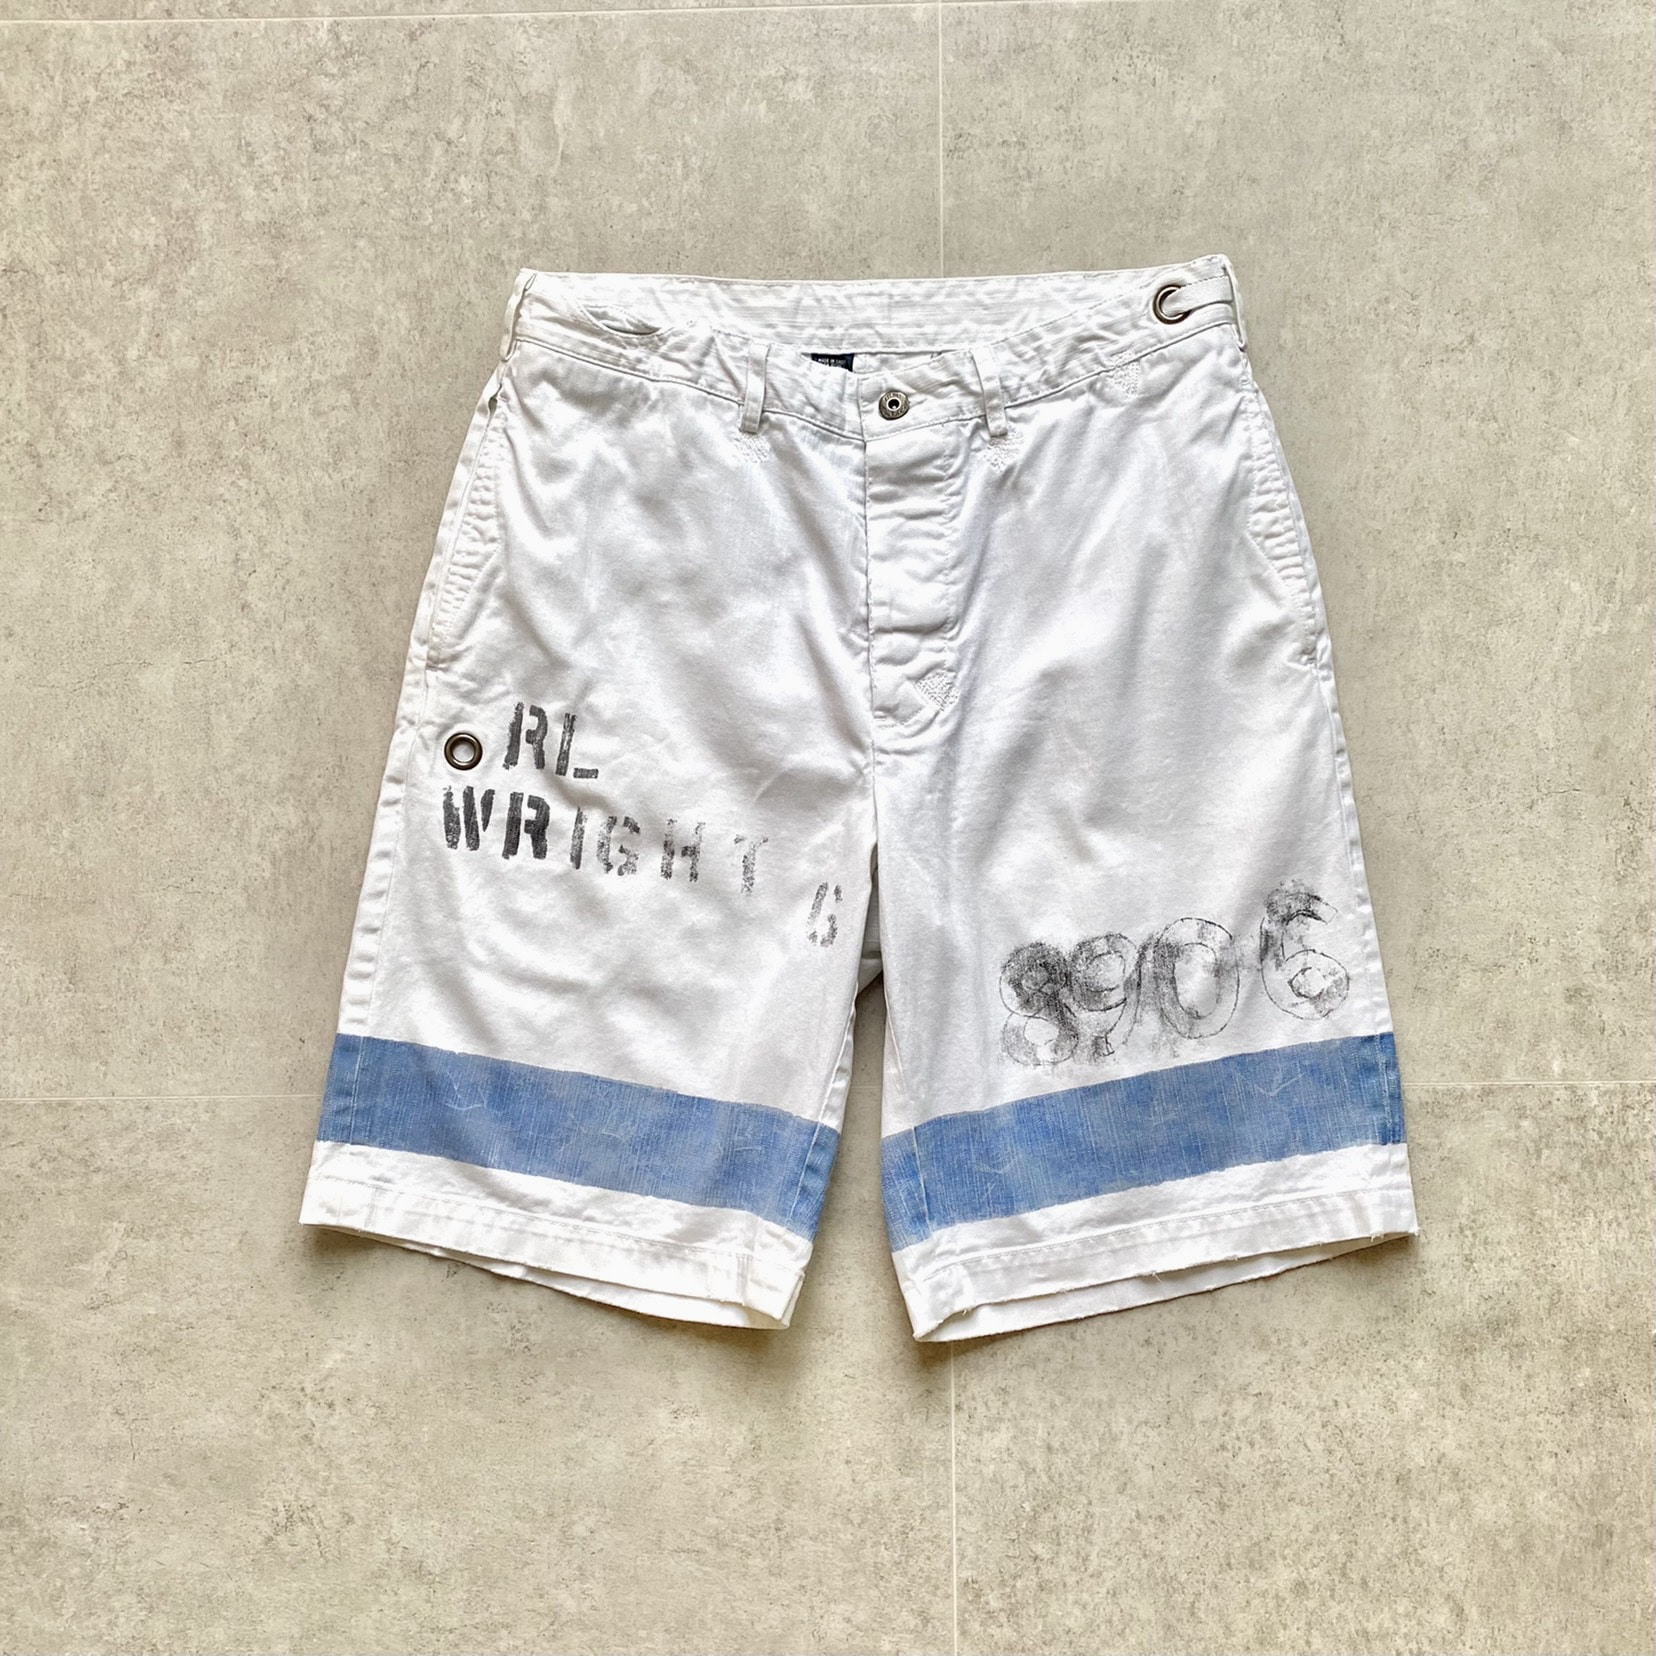 Polo Ralph Lauren Sailing White Shorts 30(29-31) - 체리피커